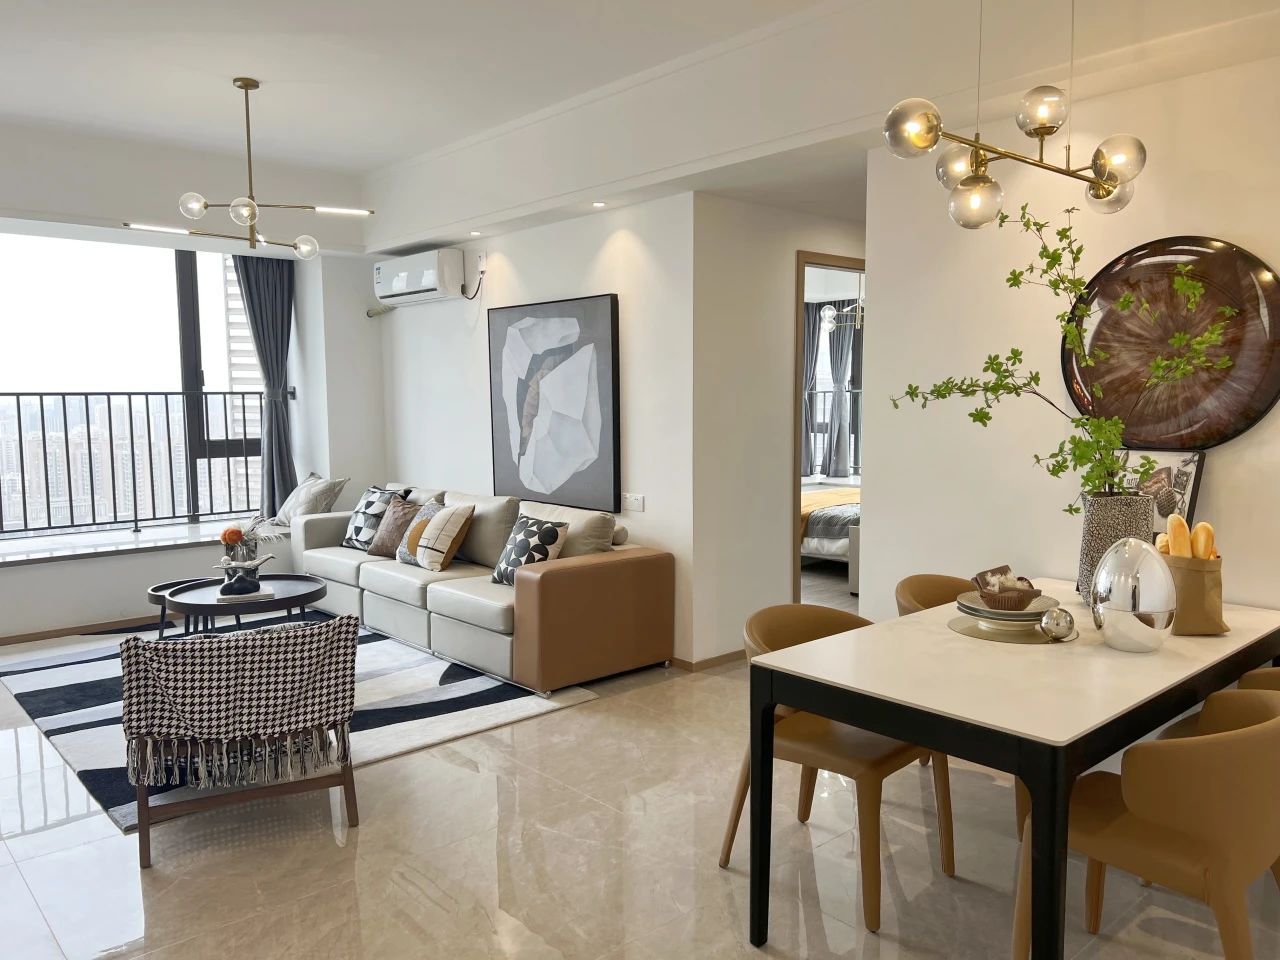 锦邻公寓ICC·天峻项目获评克而瑞2023年度“十佳高端公寓”奖项